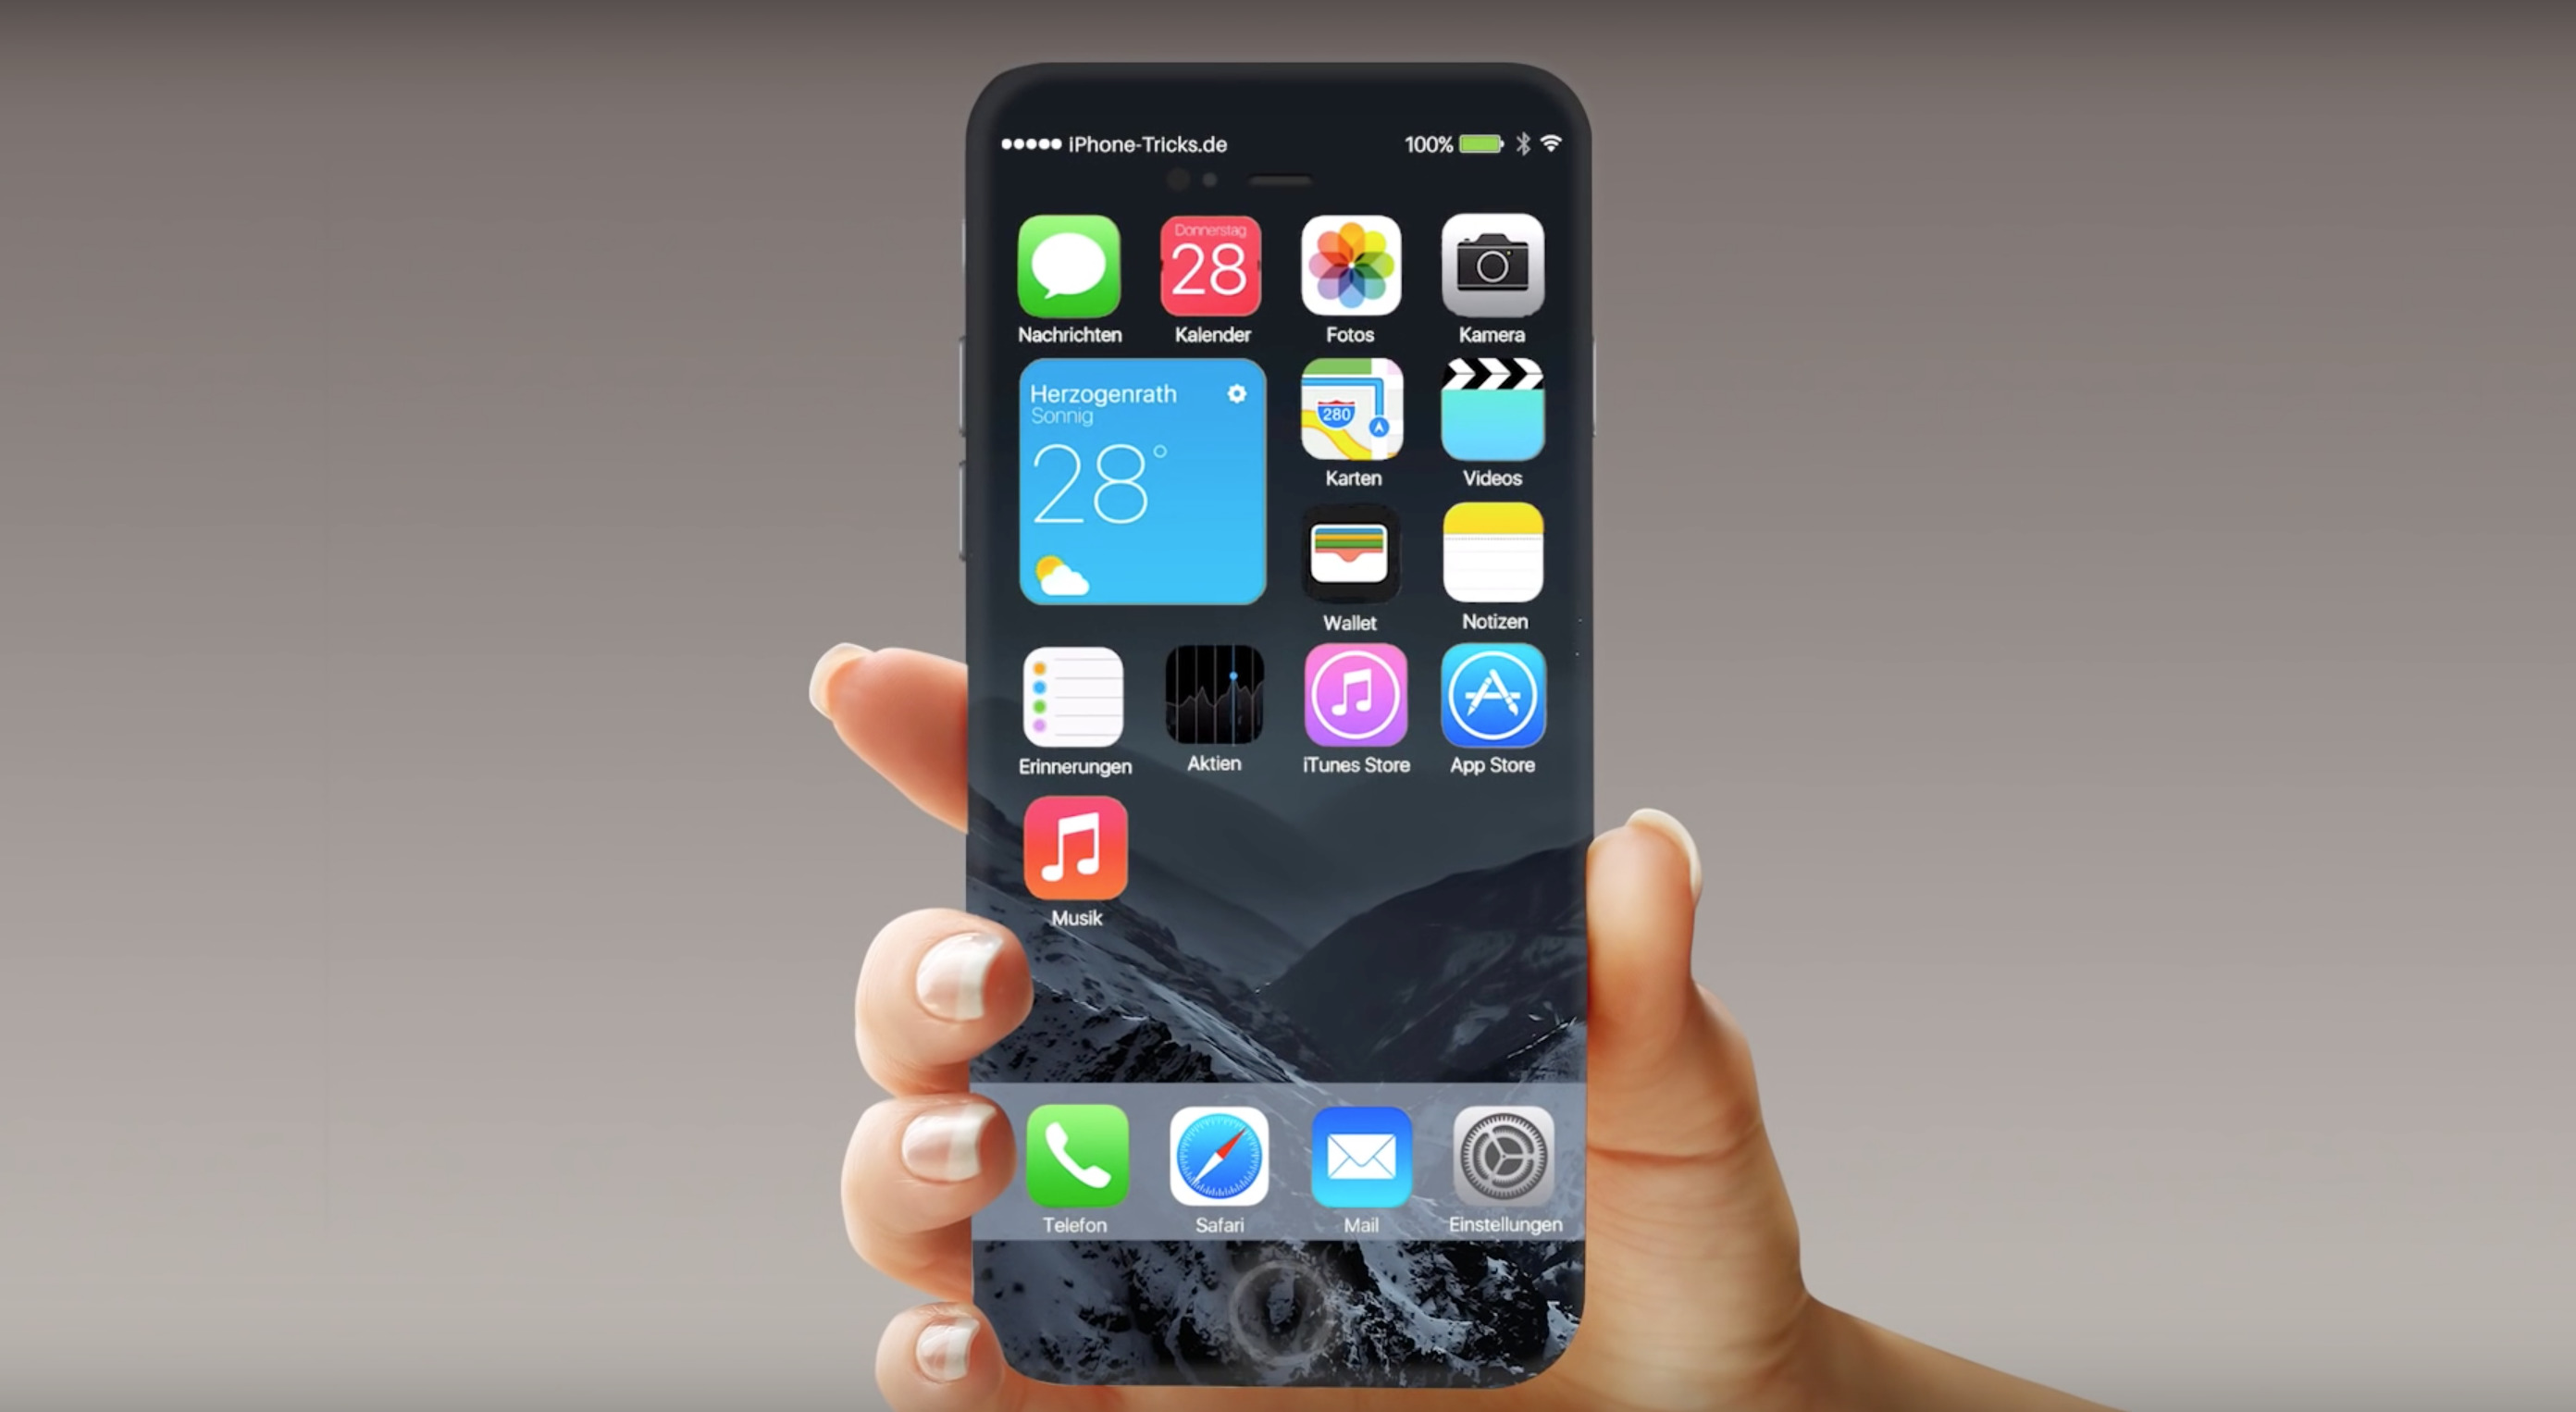 Bật mí Iphone 7: Full màn hình, nút home giấu kín - Ảnh 3.